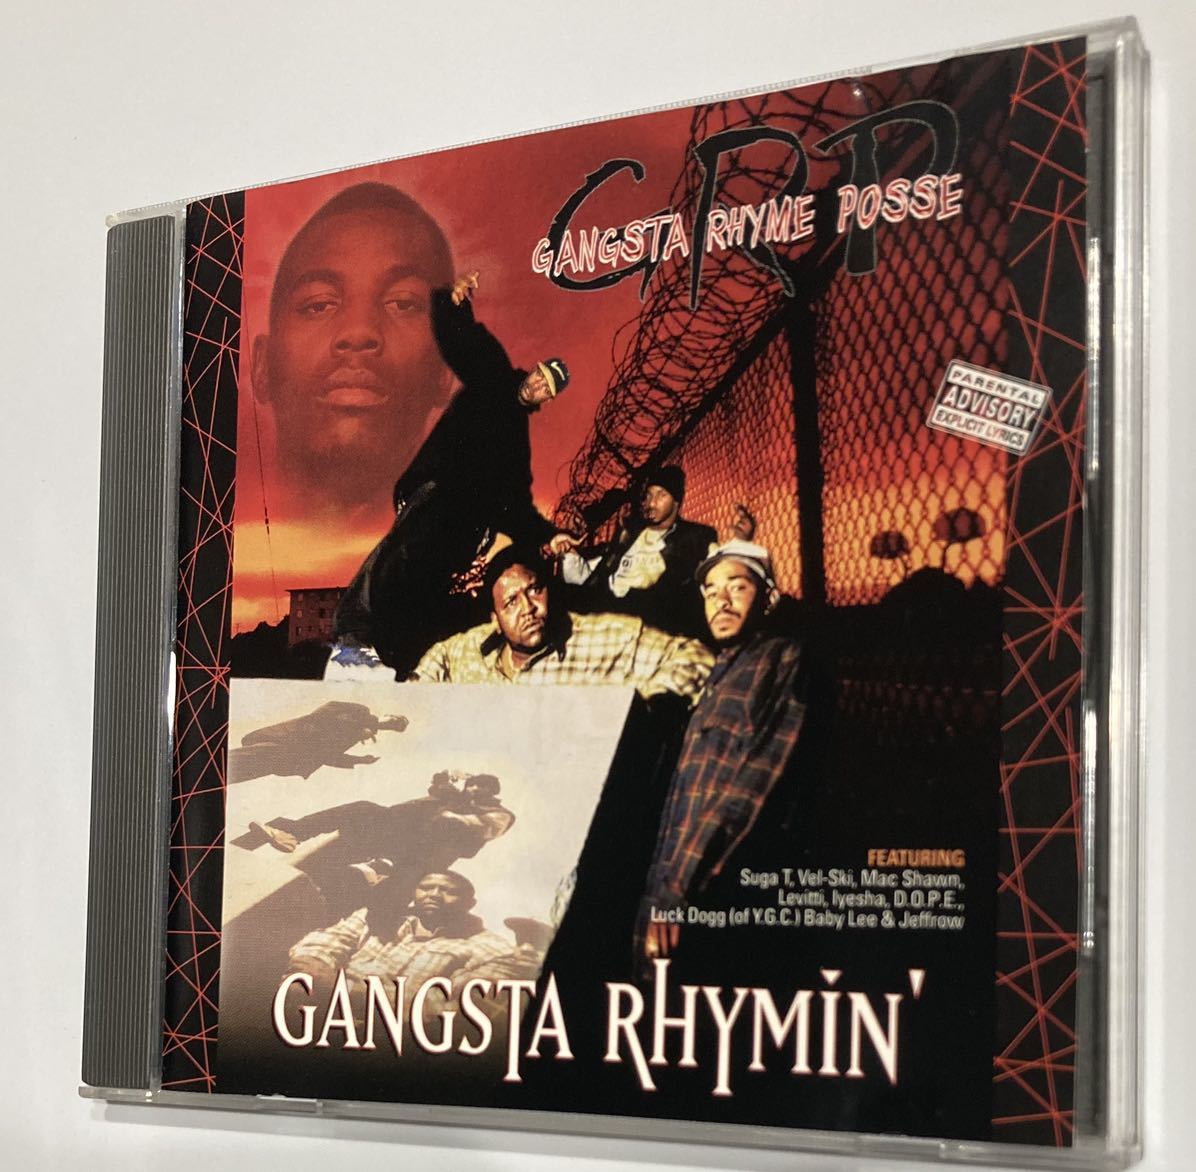 Gangsta Rhyme Posse / Gangsta Rhymin' | concept-sol.com